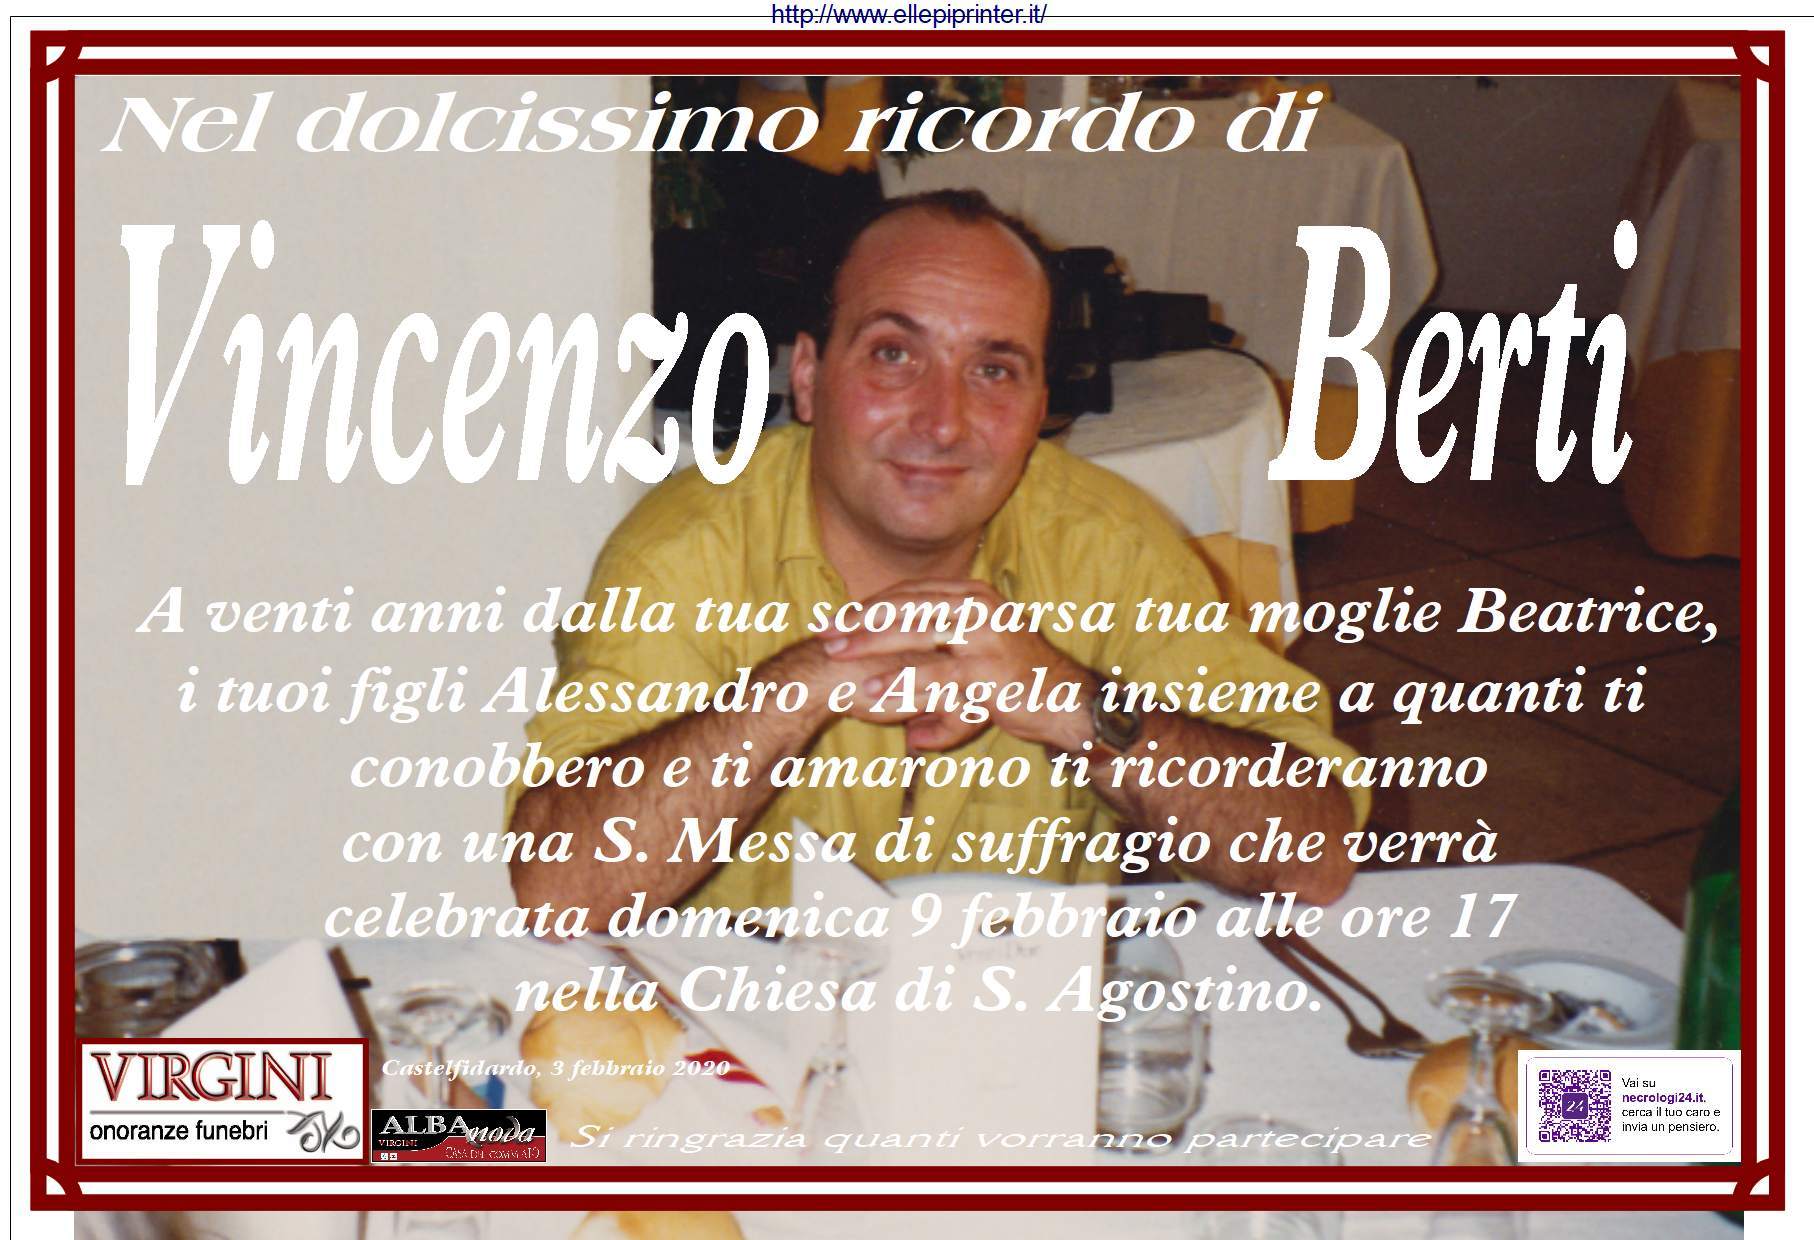 Vincenzo Berti